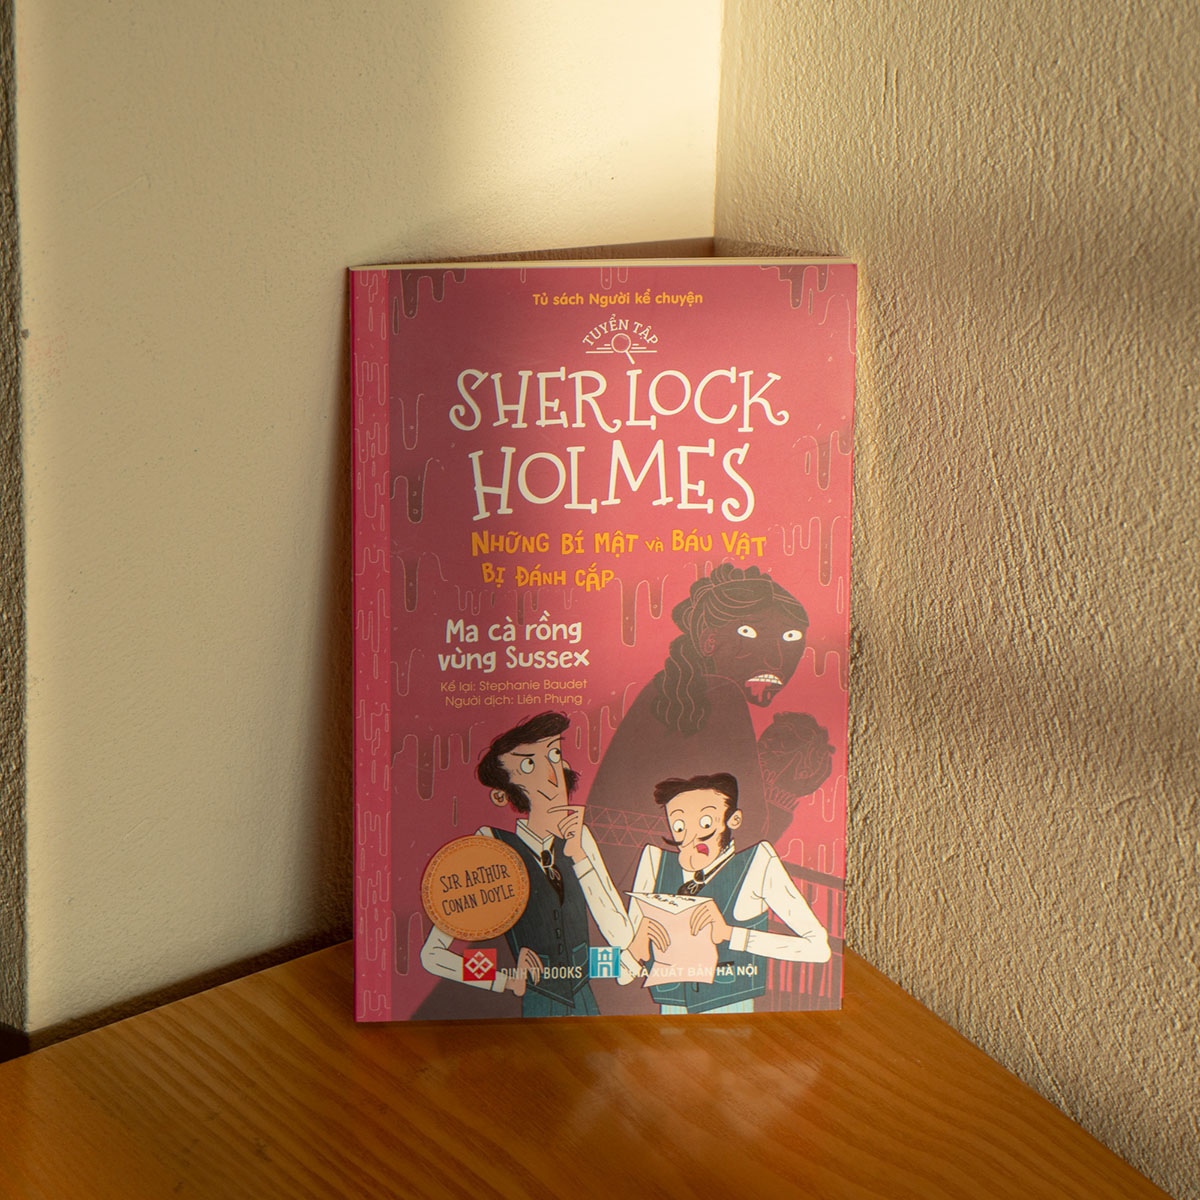 Tuyển tập Sherlock Holmes - Những bí mật và báu vật bị đánh cắp- Ma cà rồng vùng Sussex